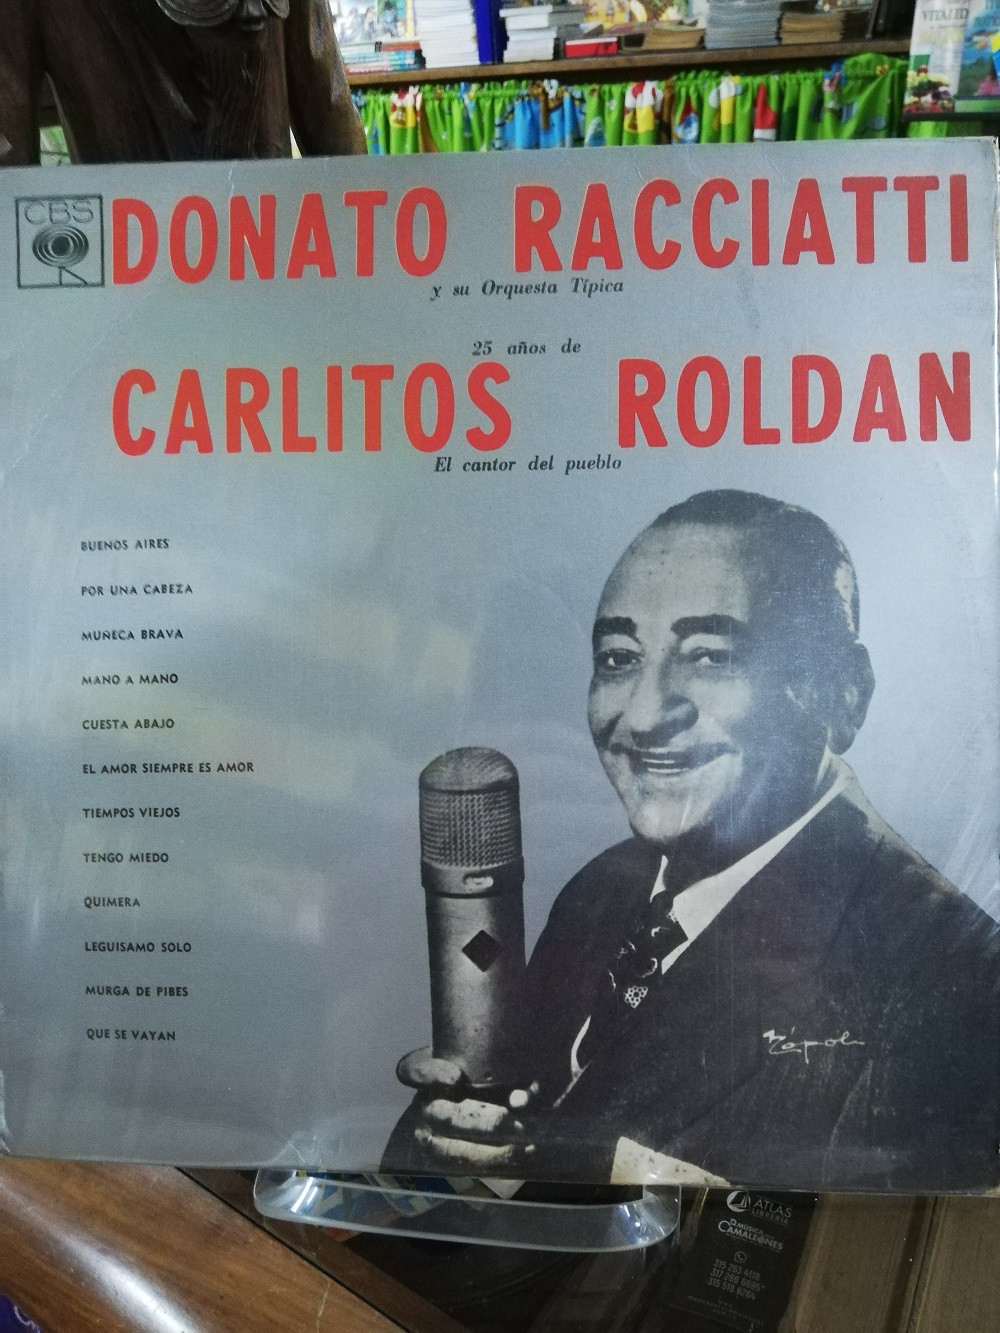 Imagen LP DONATO RACCIATTI Y SU ORQUESTA TIPICA - 25 AÑOS DE CARLITOS ROLDAN EL CANTOR DEL PUEBLO 1